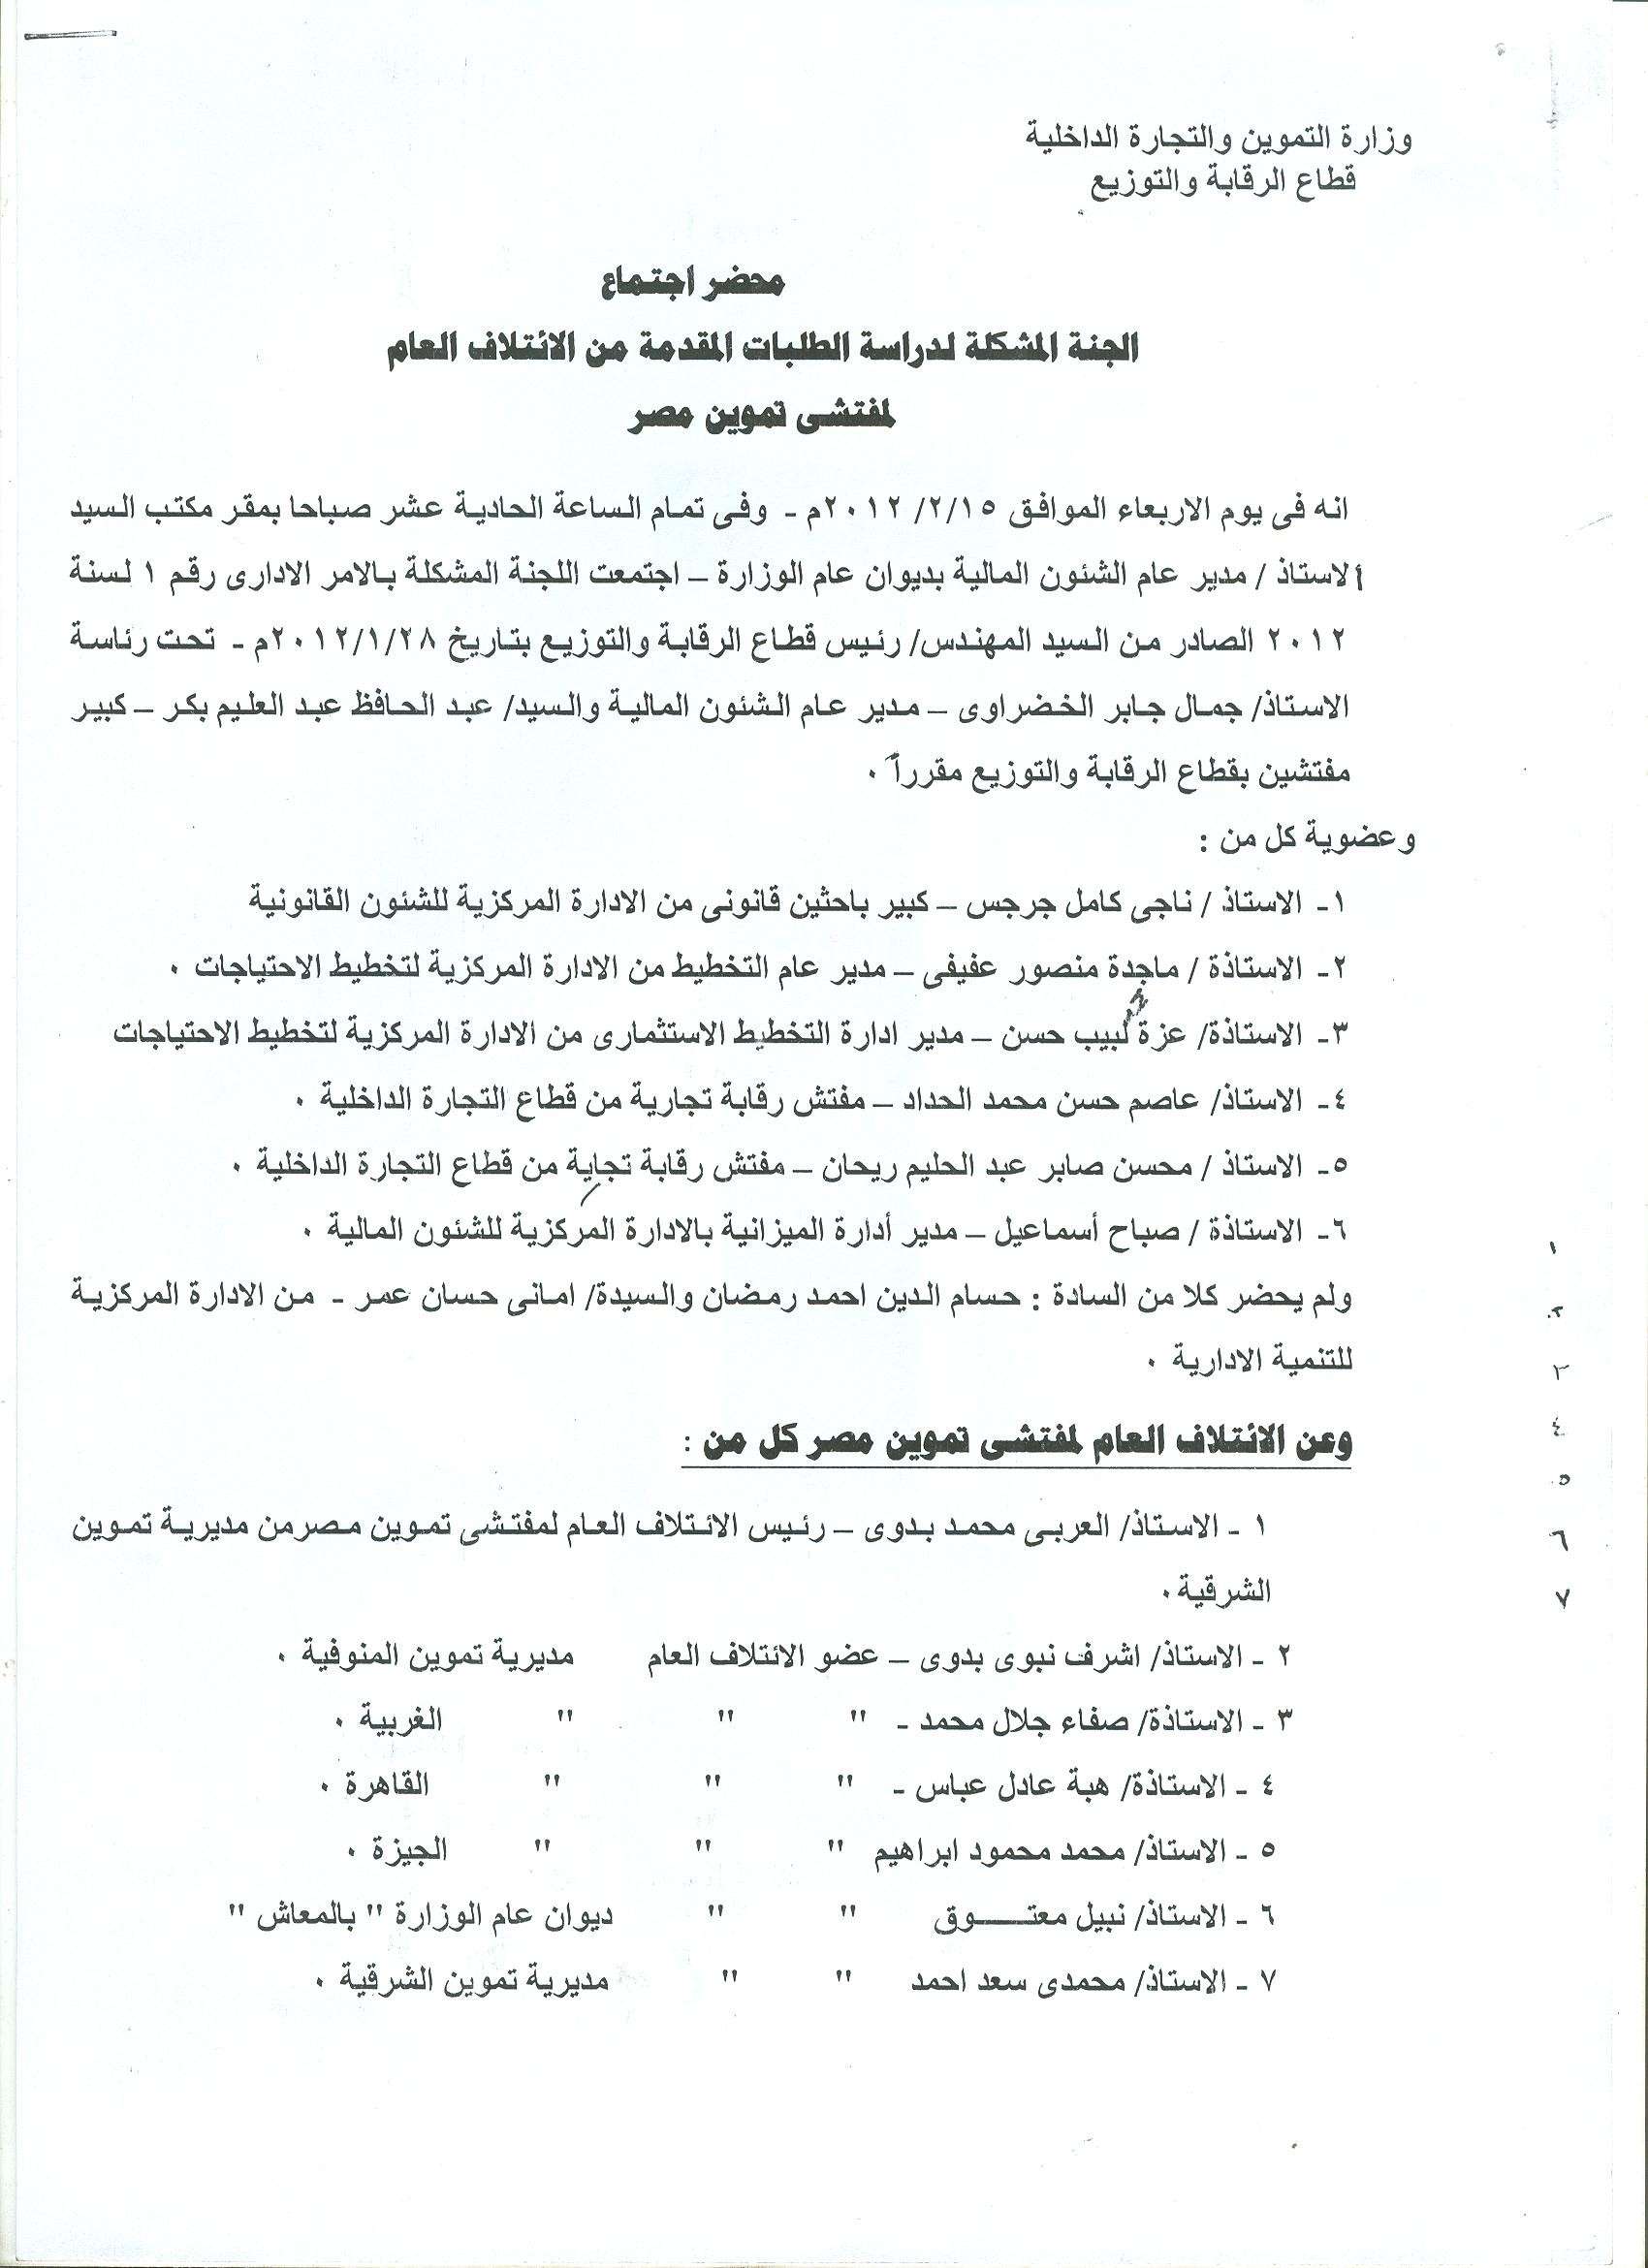 أعمال لجنة الإئتلاف العام للعاملين بتموين مصر بالوزاره خلال شهر فبراير 2012 1210